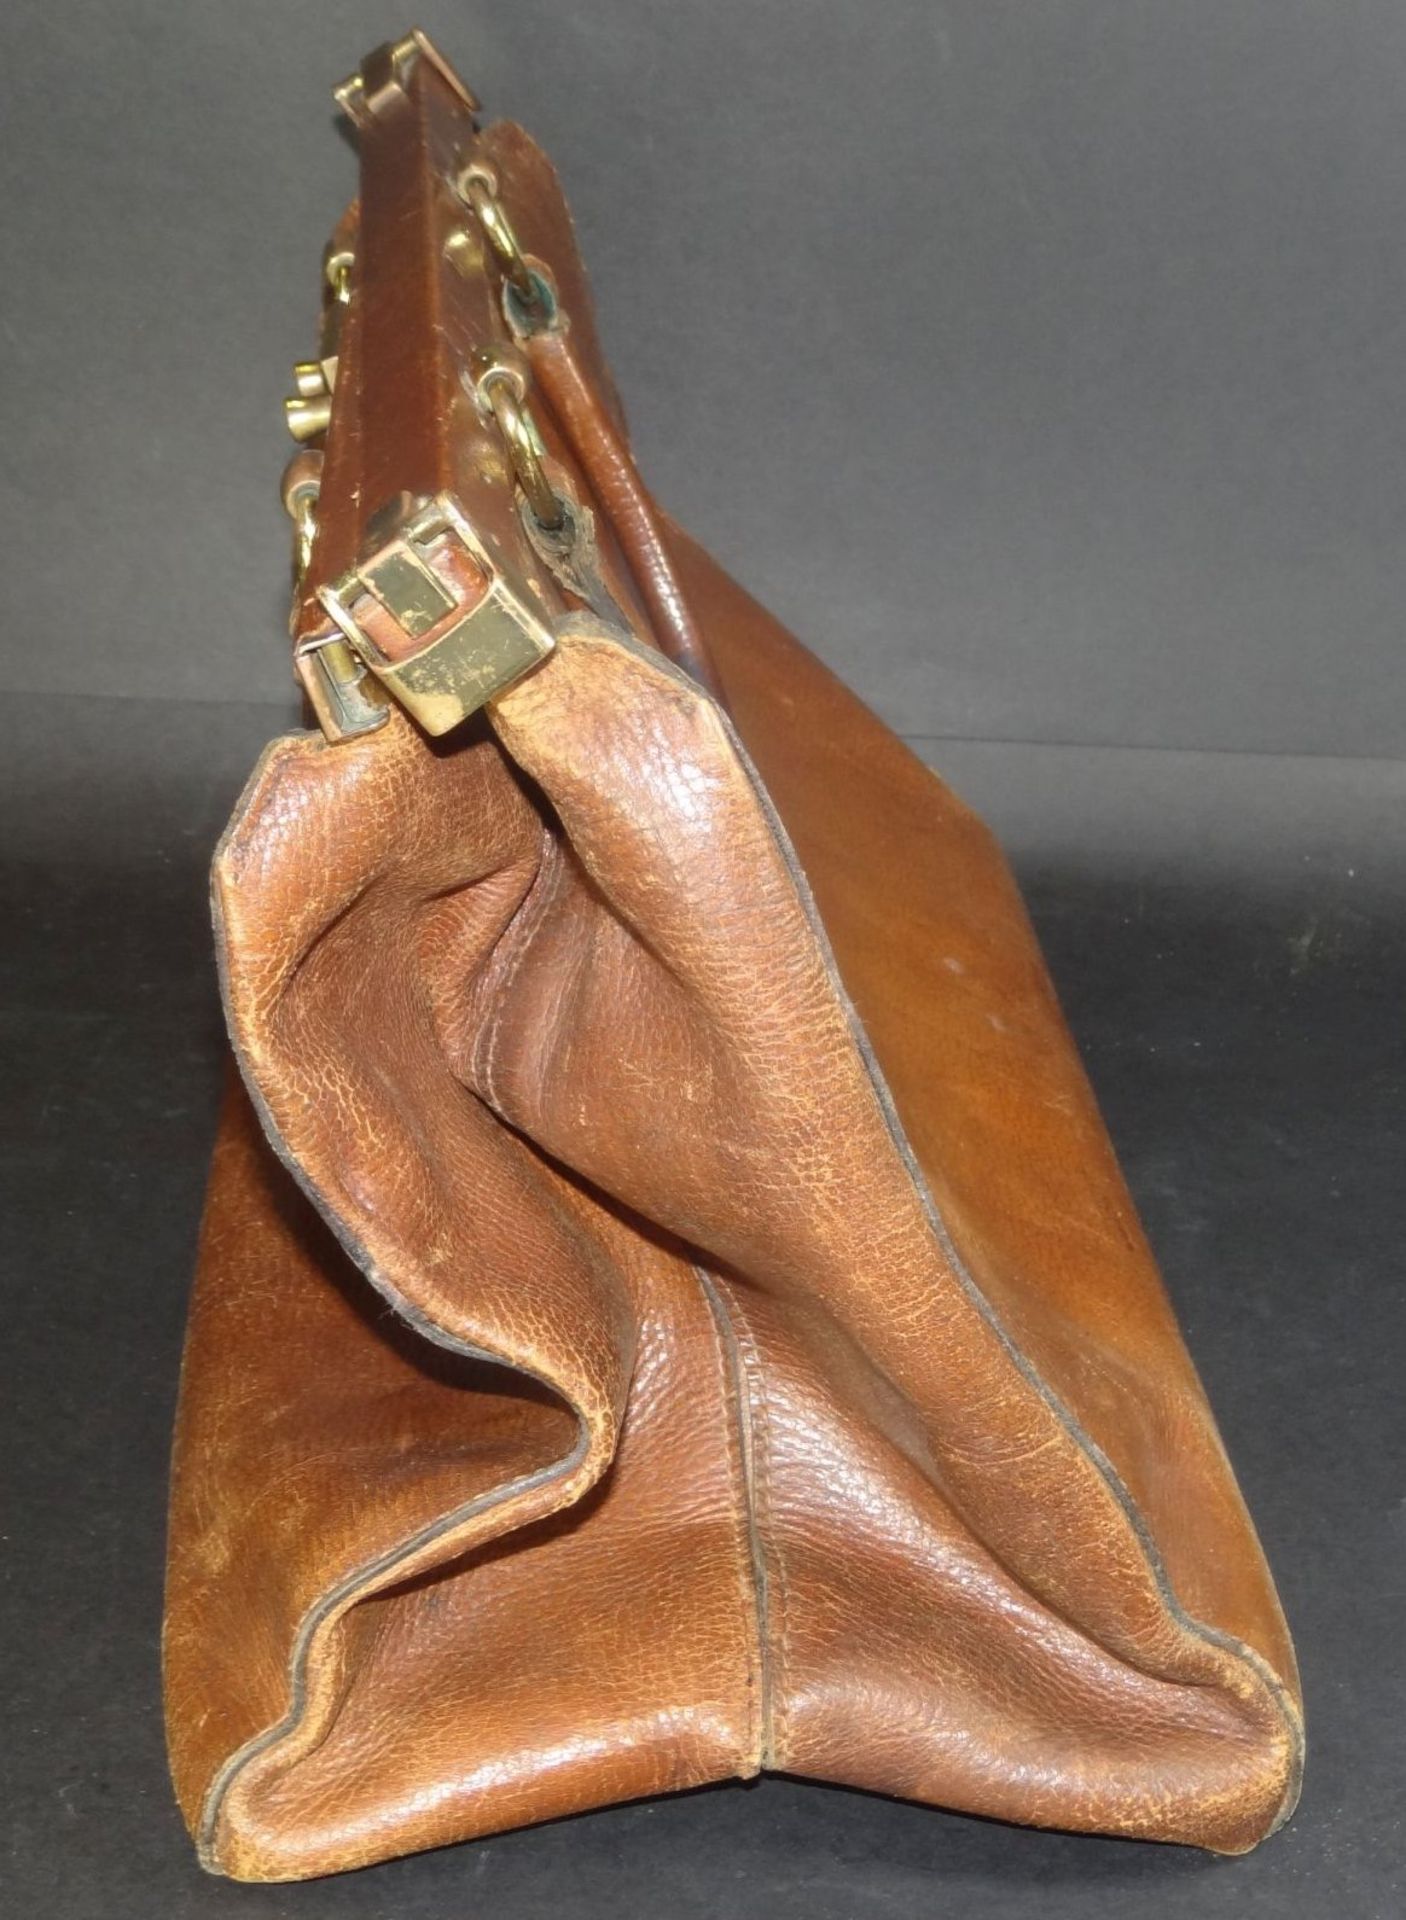 gr. Leder-Handtasche (Arzttasche?) mit Messingbeschläger, Alters-u. Gebrauchsspuren, H-28 cm, B-38 - Bild 3 aus 4